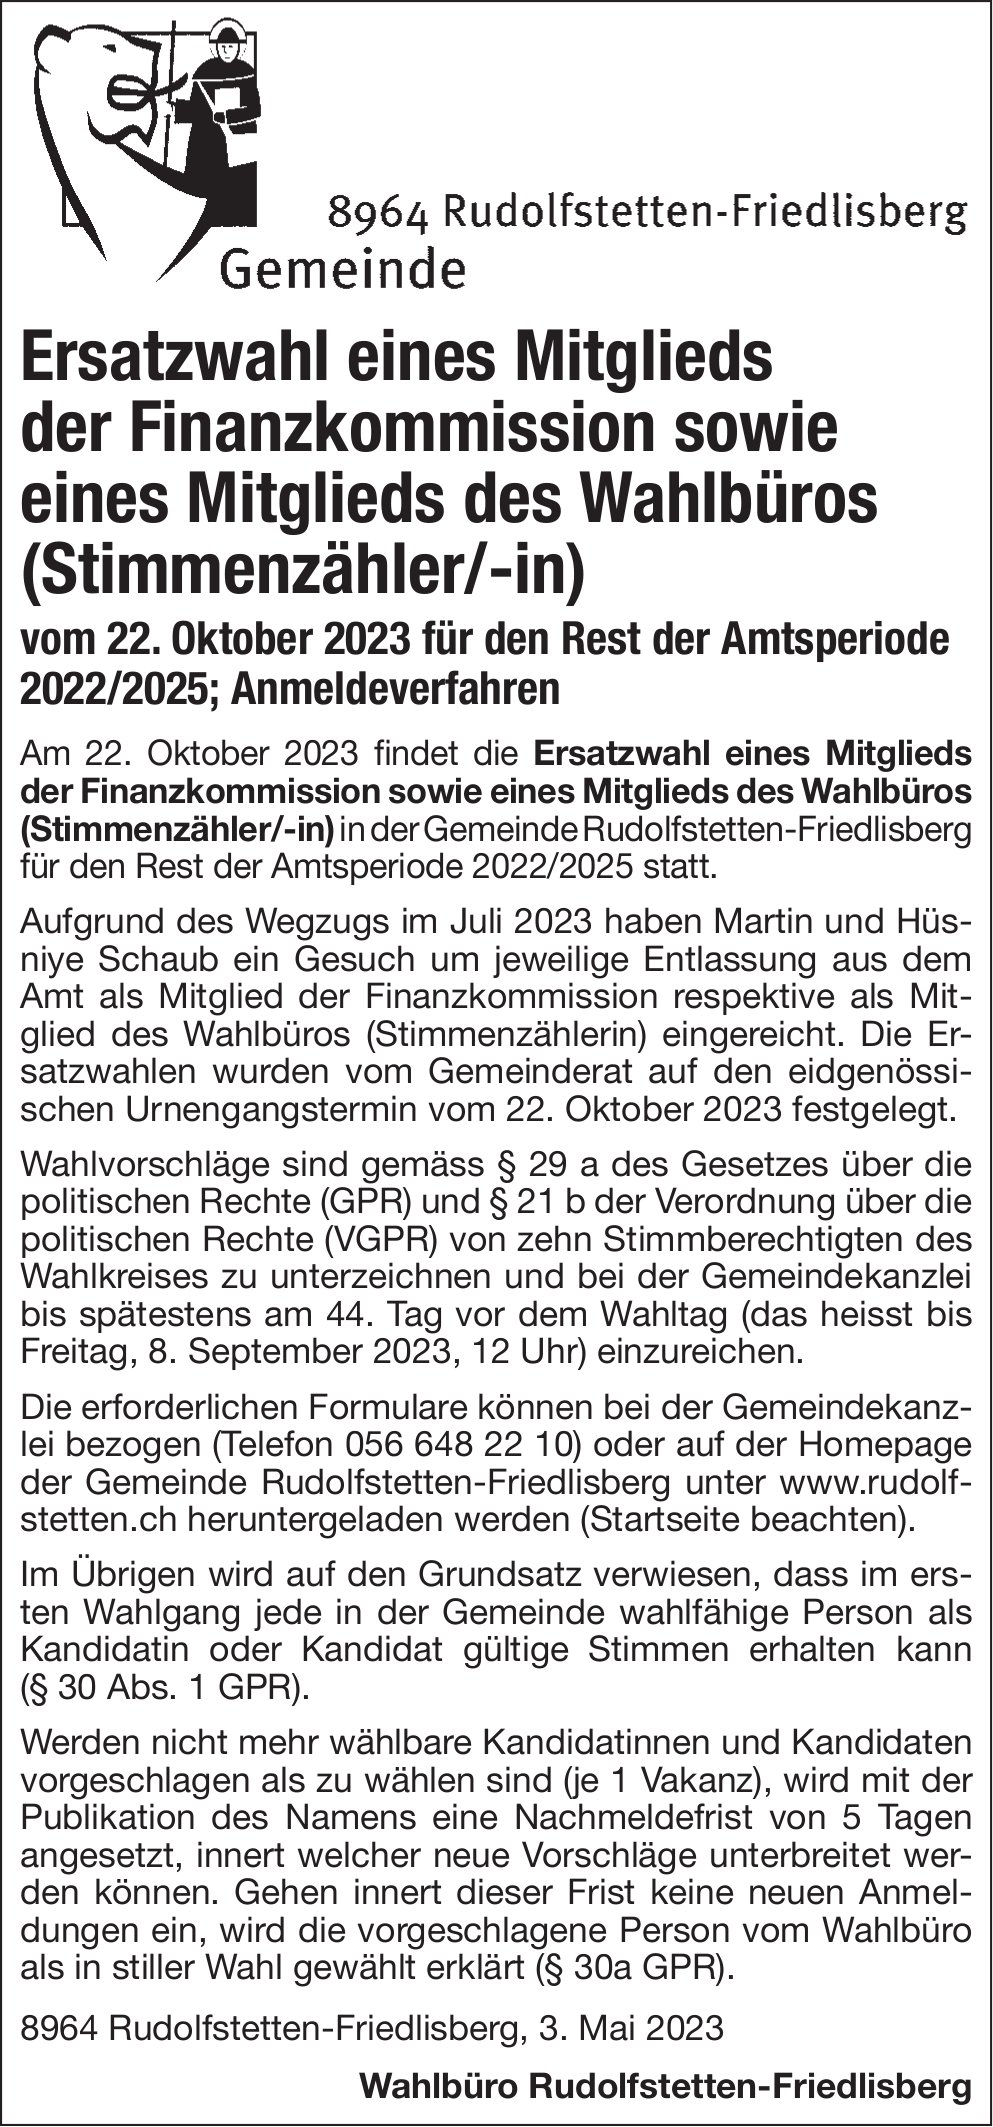 Rudolfstetten-Friedlisberg - Ersatzwahl eines Mitglieds der Finanzkommission sowie eines Mitglieds des Wahlbüros